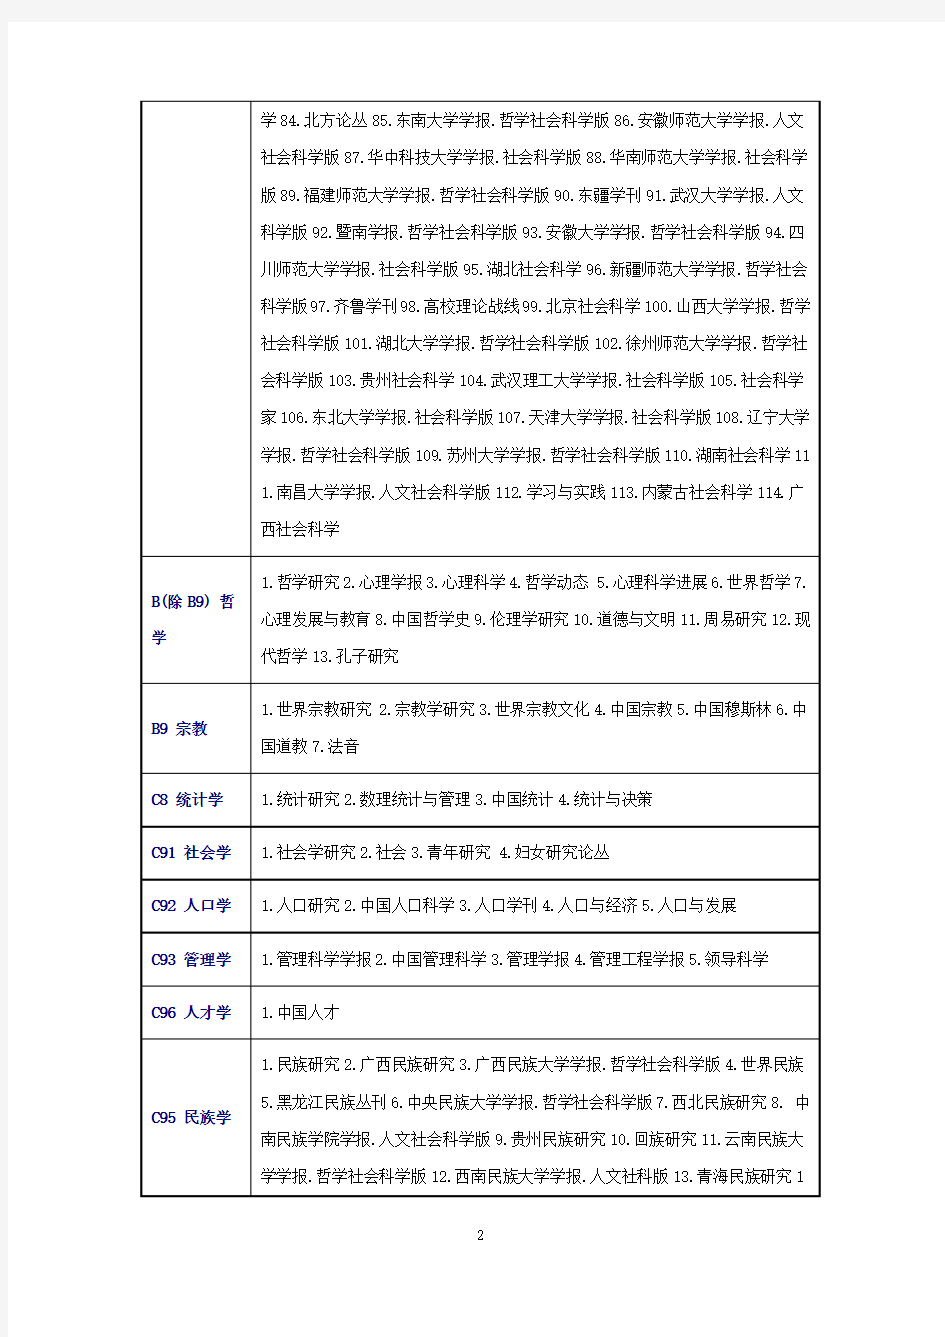 2017年北大版《中文核心期刊要目总览》